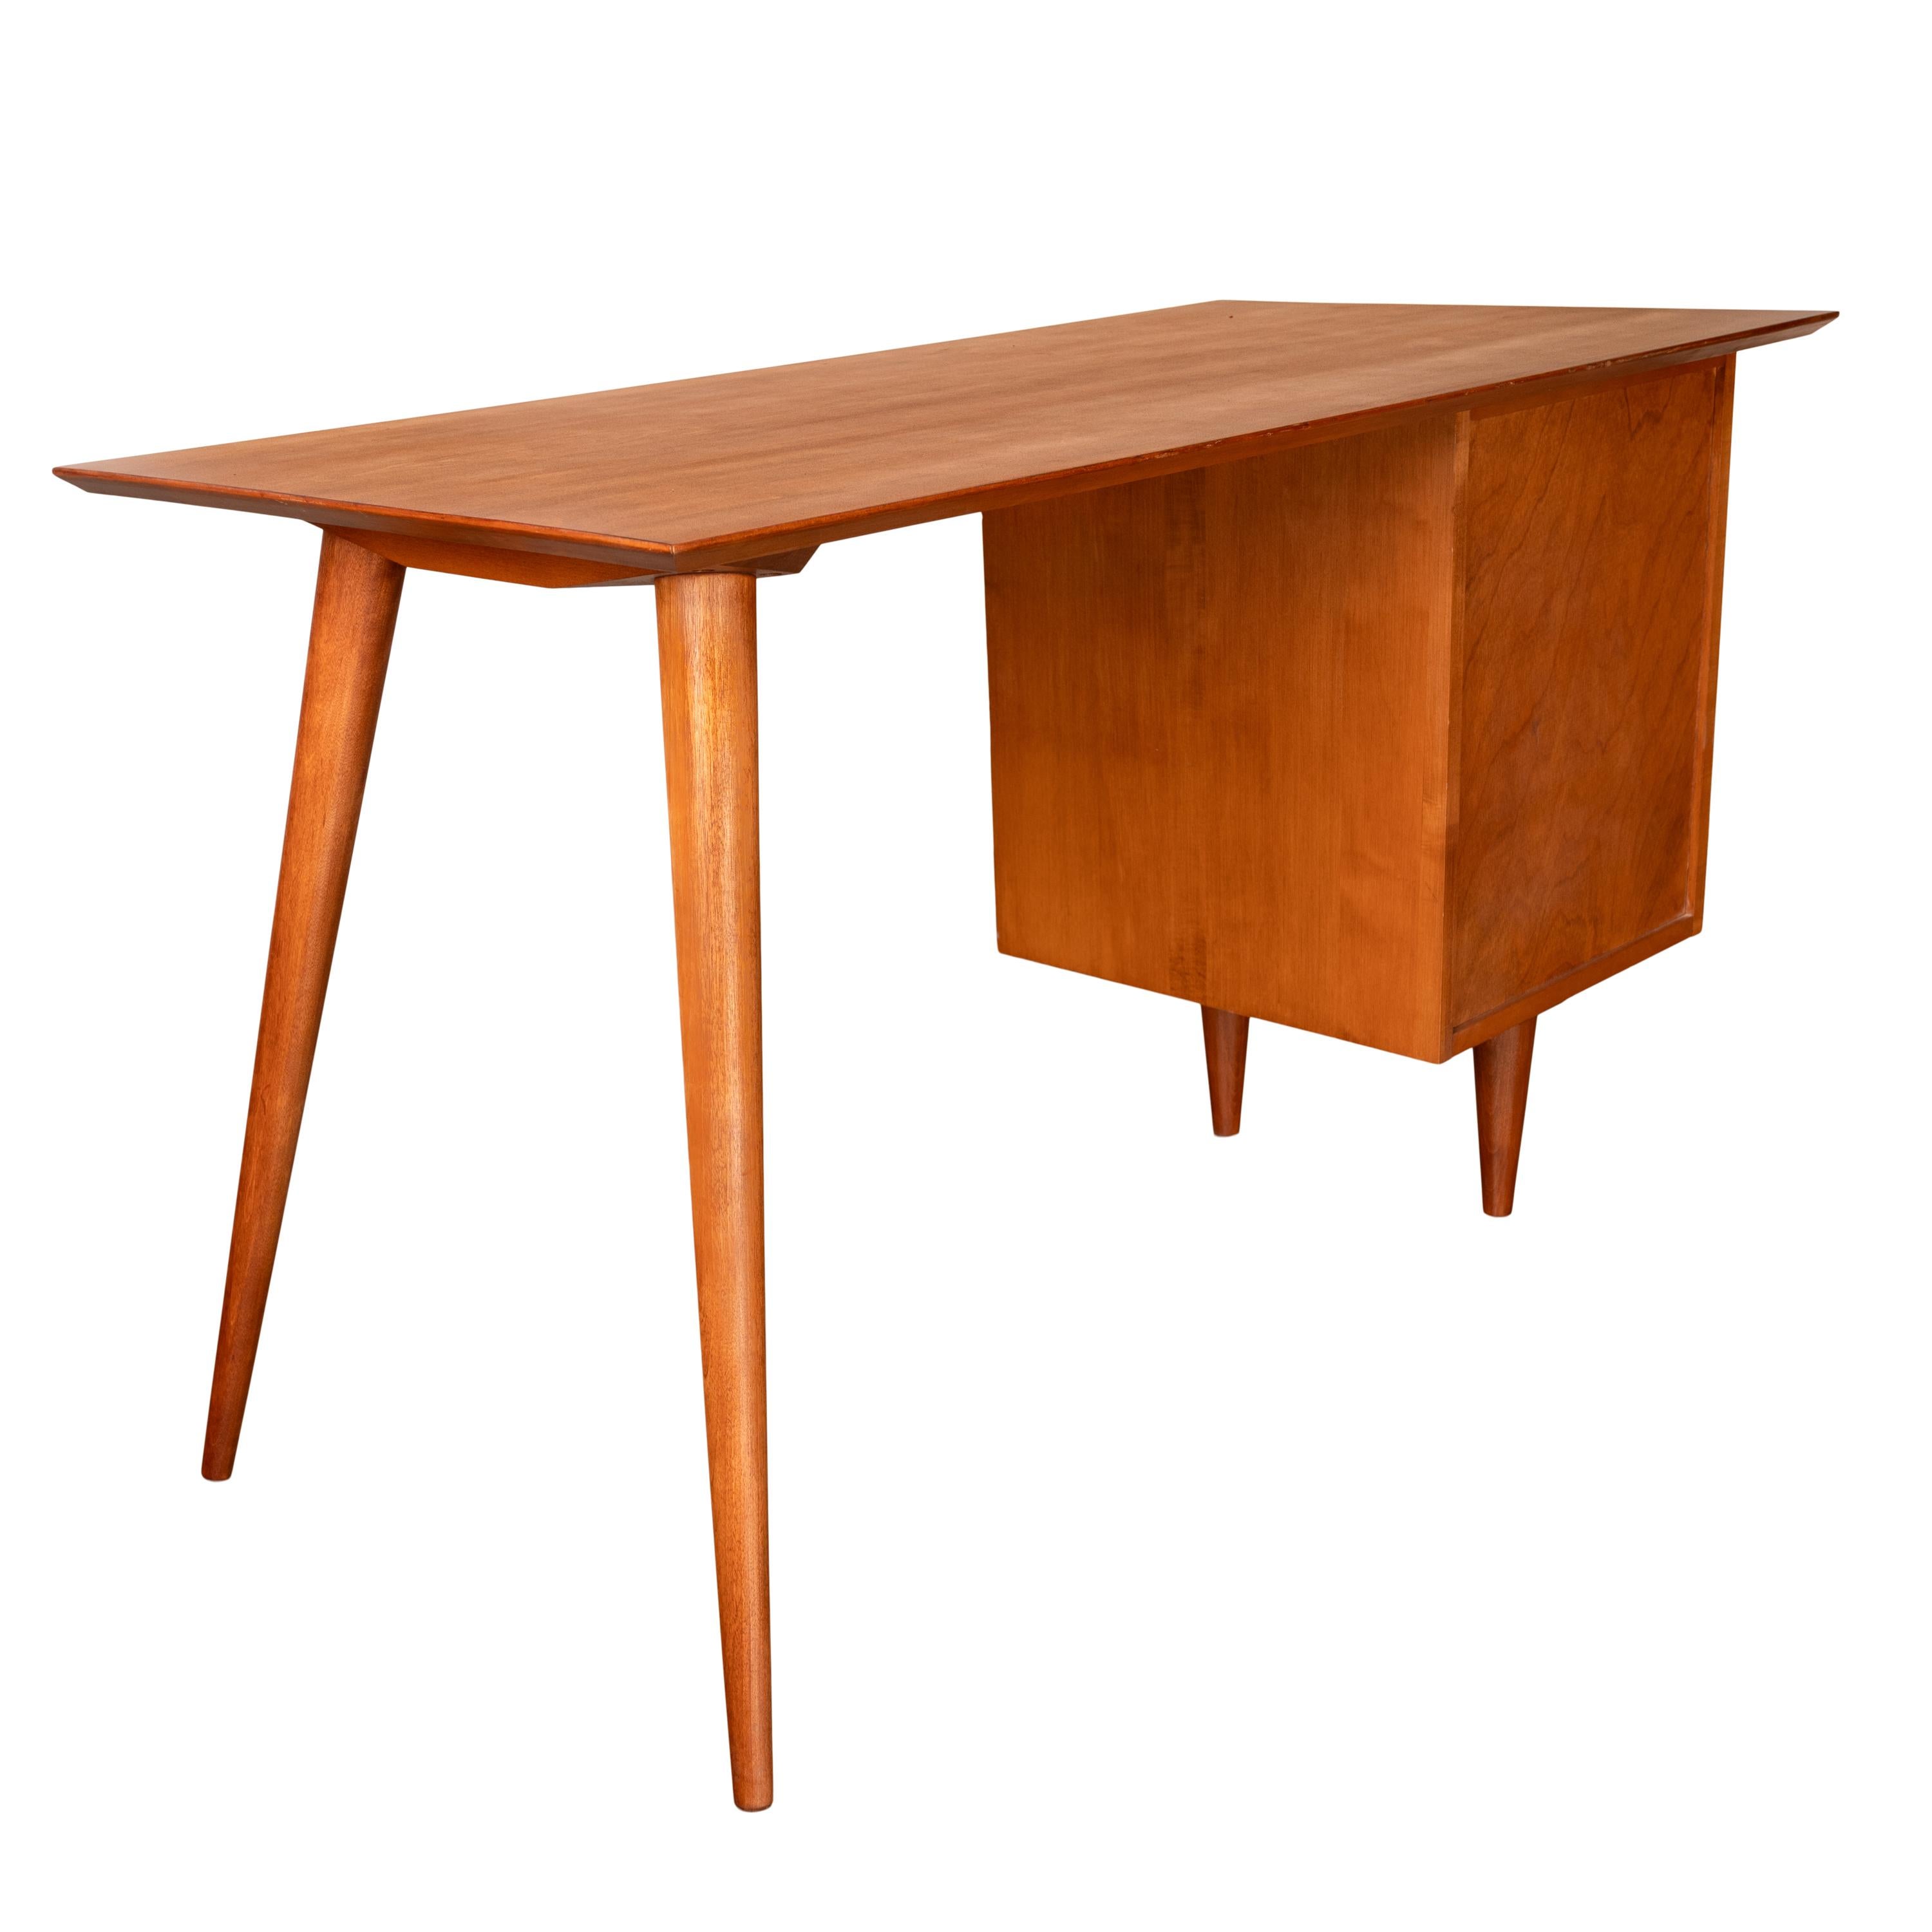 American Mid Century Modern Paul McCobb Planner Group Maple # 1560 Desk 1950's For Sale 4